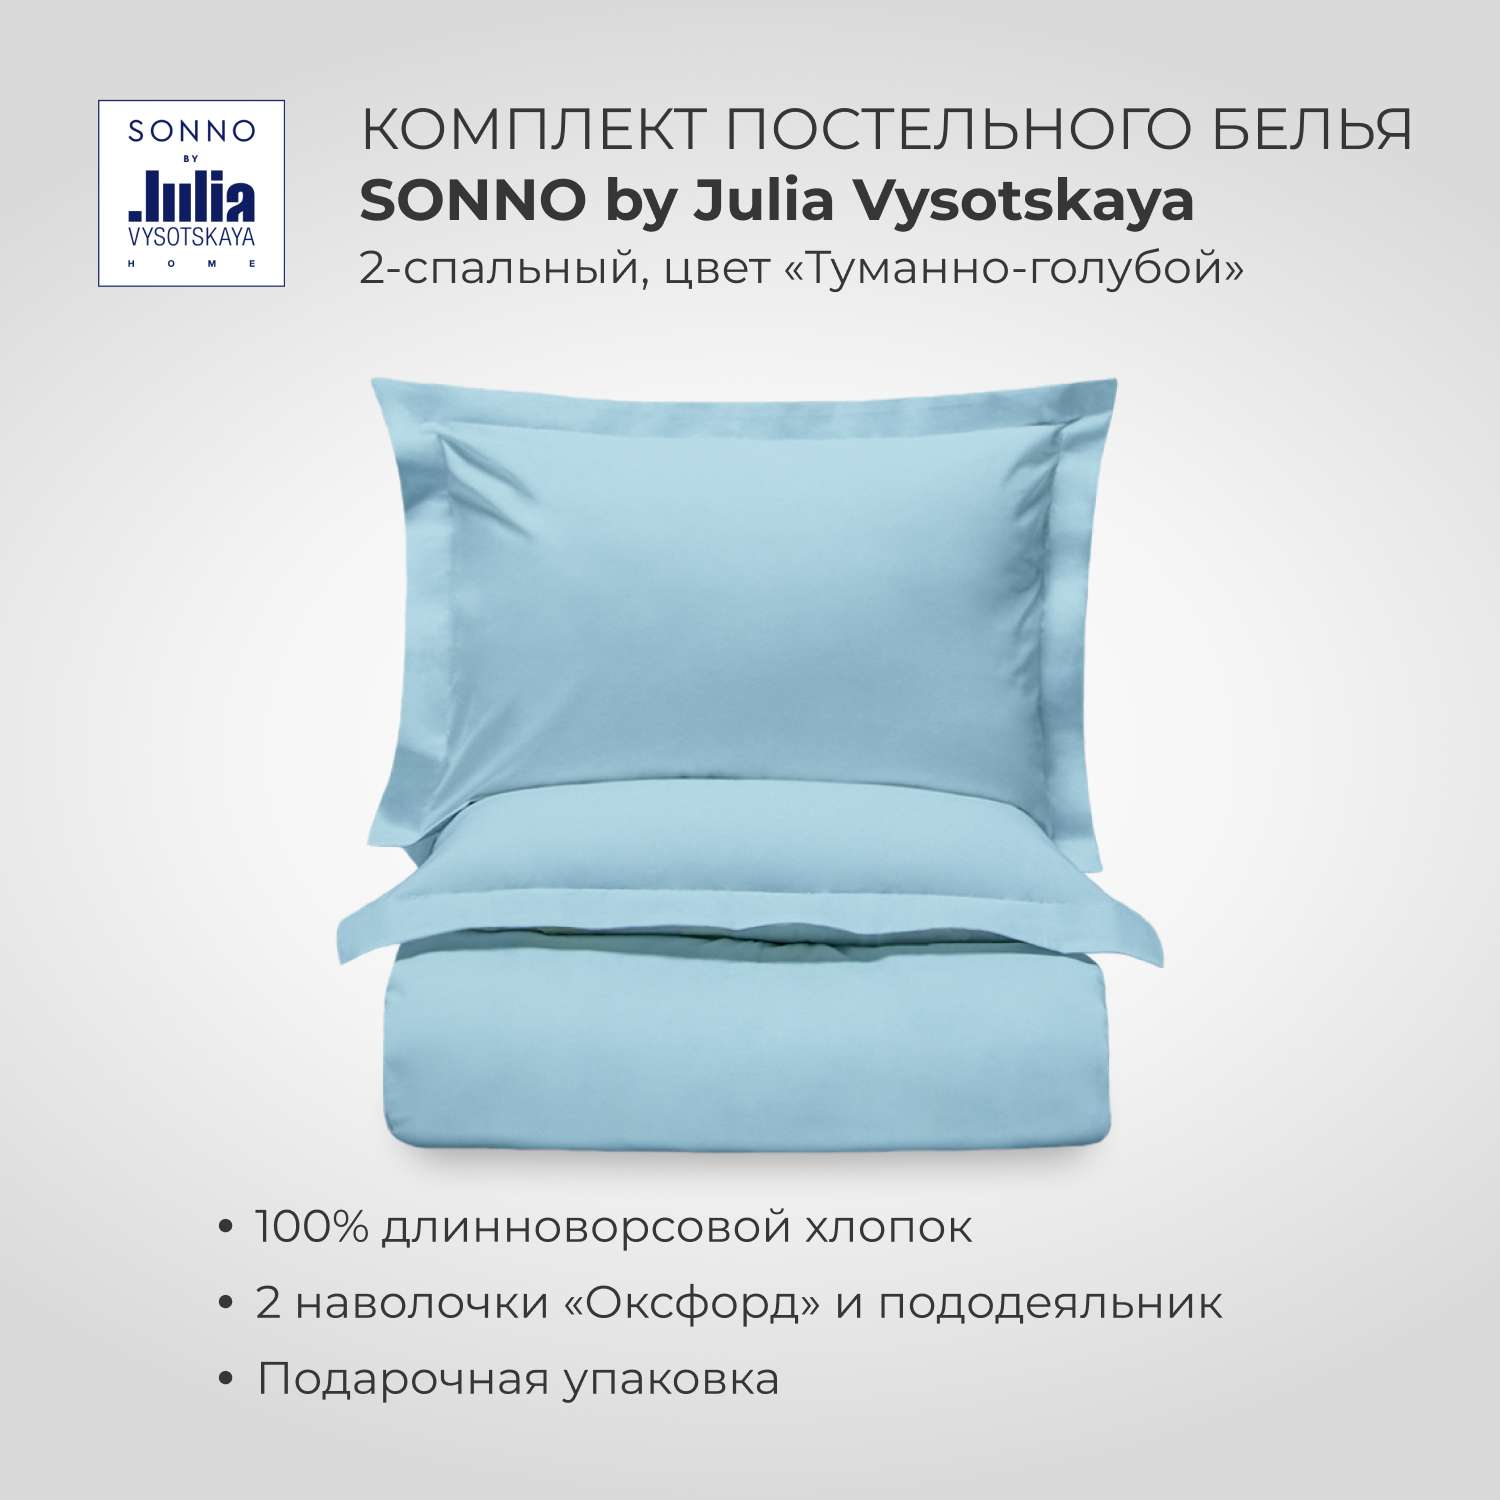 Комплект постельного белья SONNO by Julia Vysotskaya 2-спальный цвет Туманно-голубой - фото 1